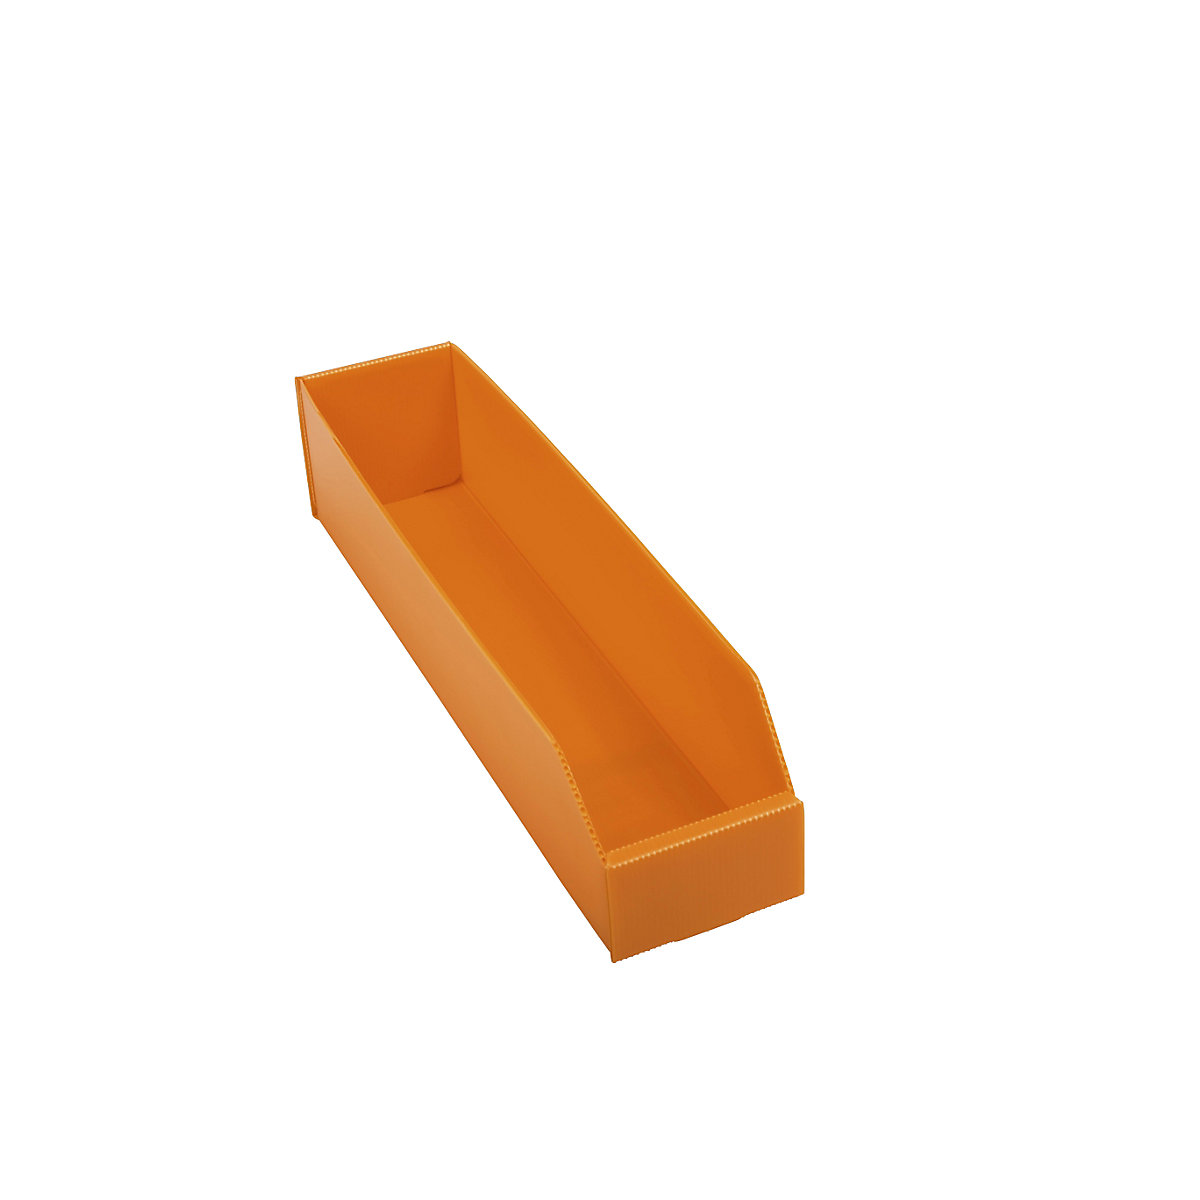 Plastična kutija za regale, sklopiva, DxŠxV 450 x 100 x 100 mm, u narančastoj boji, pak. 25 kom.-4